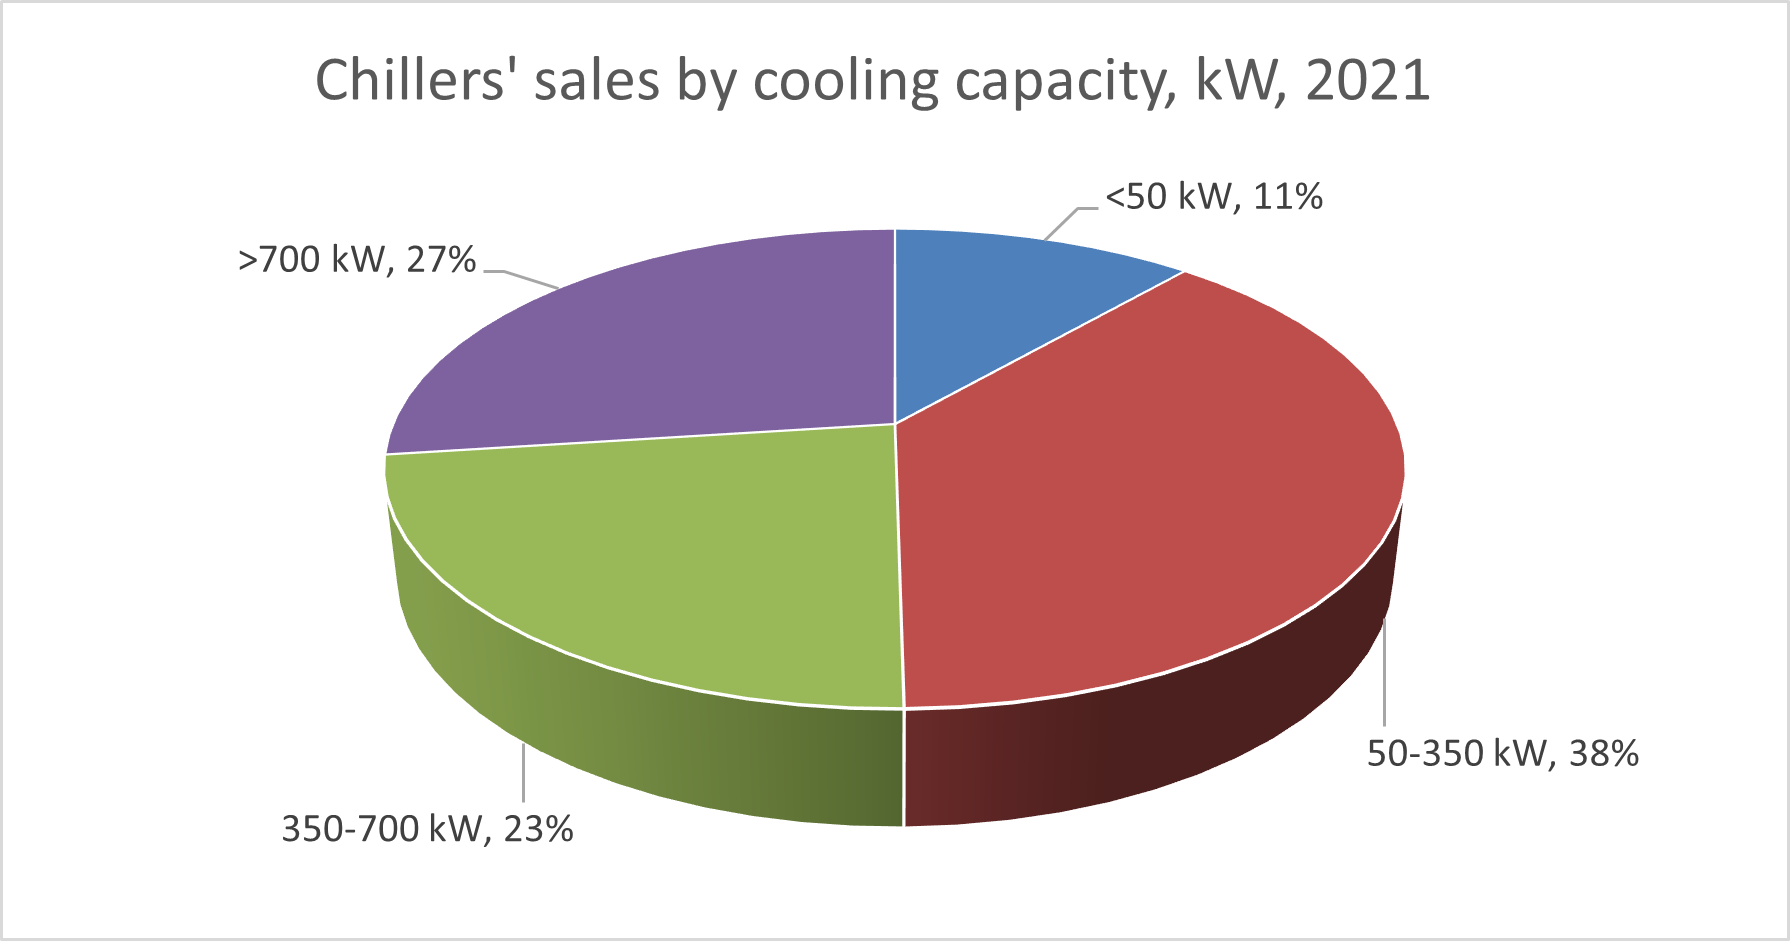 Ventes de refroidisseurs par capacité de refroidissement (pourcentage en kW), EU 28 - 2021, d'après Eurovent Market intelligence